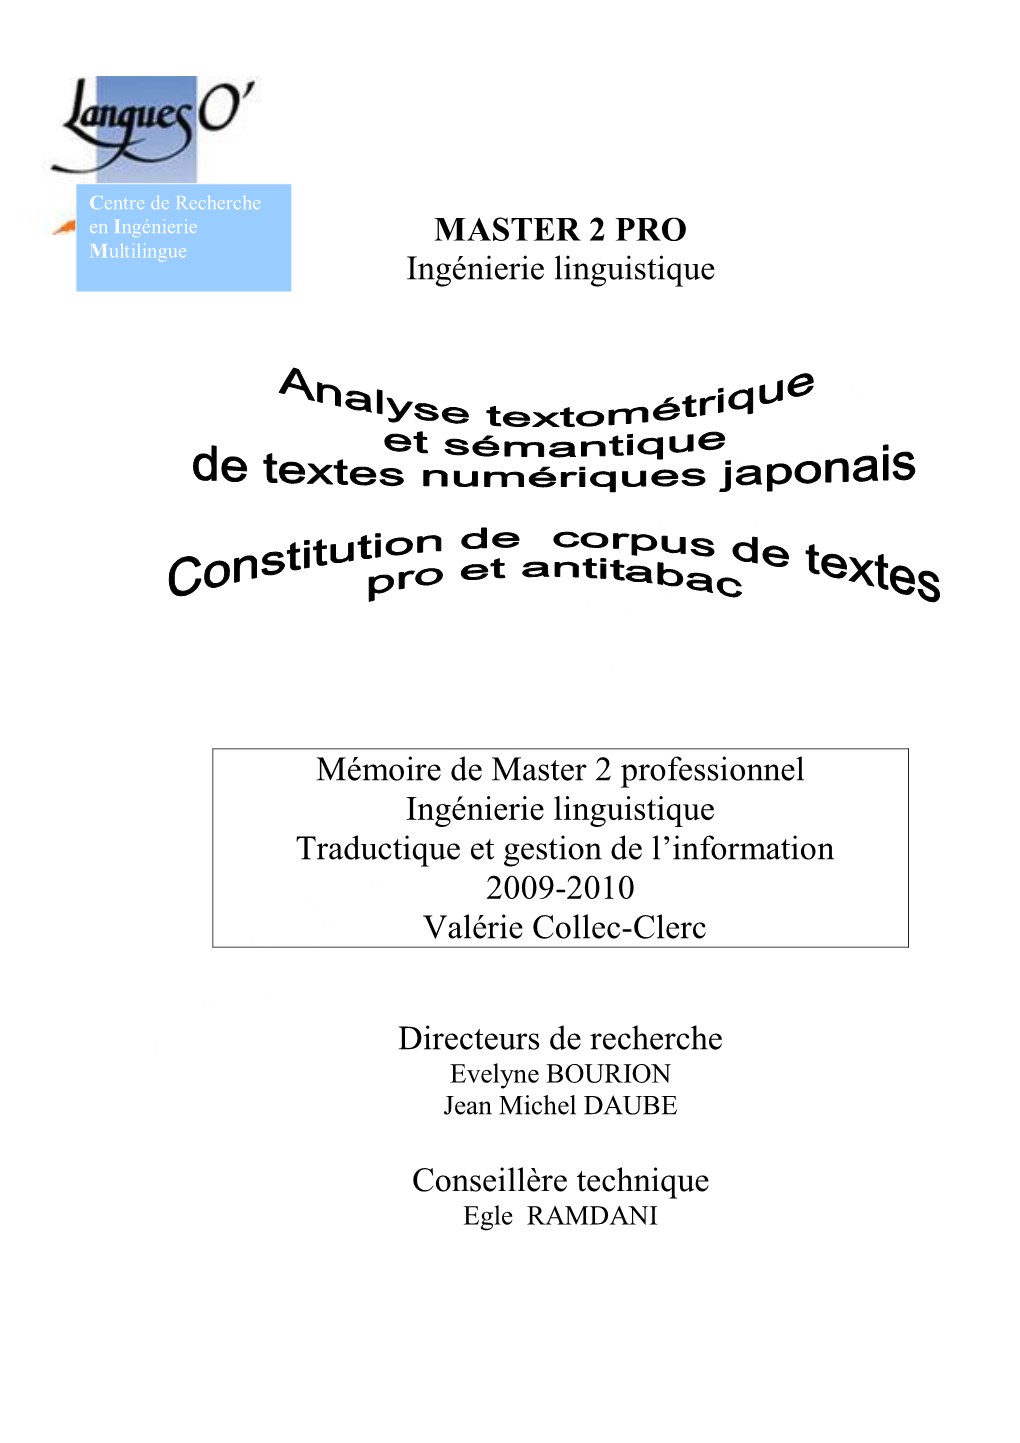 MASTER 2 PRO Ingénierie Linguistique Mémoire